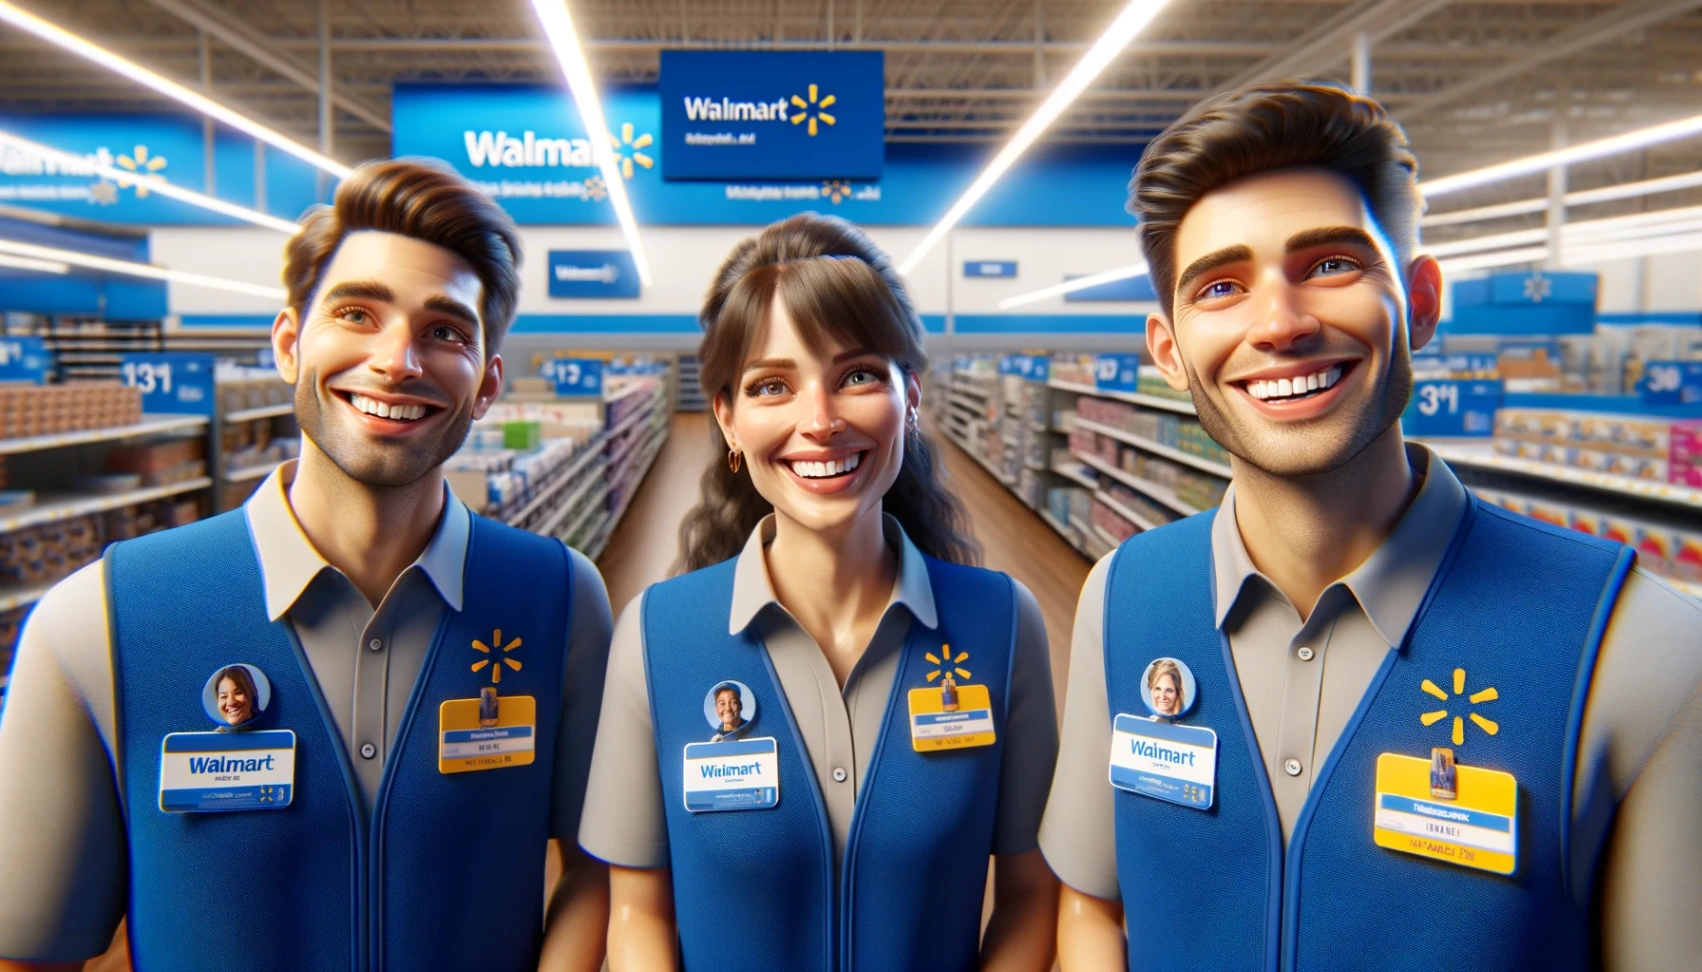 Вакансии работы в Walmart: узнайте, как подать заявку пошагово